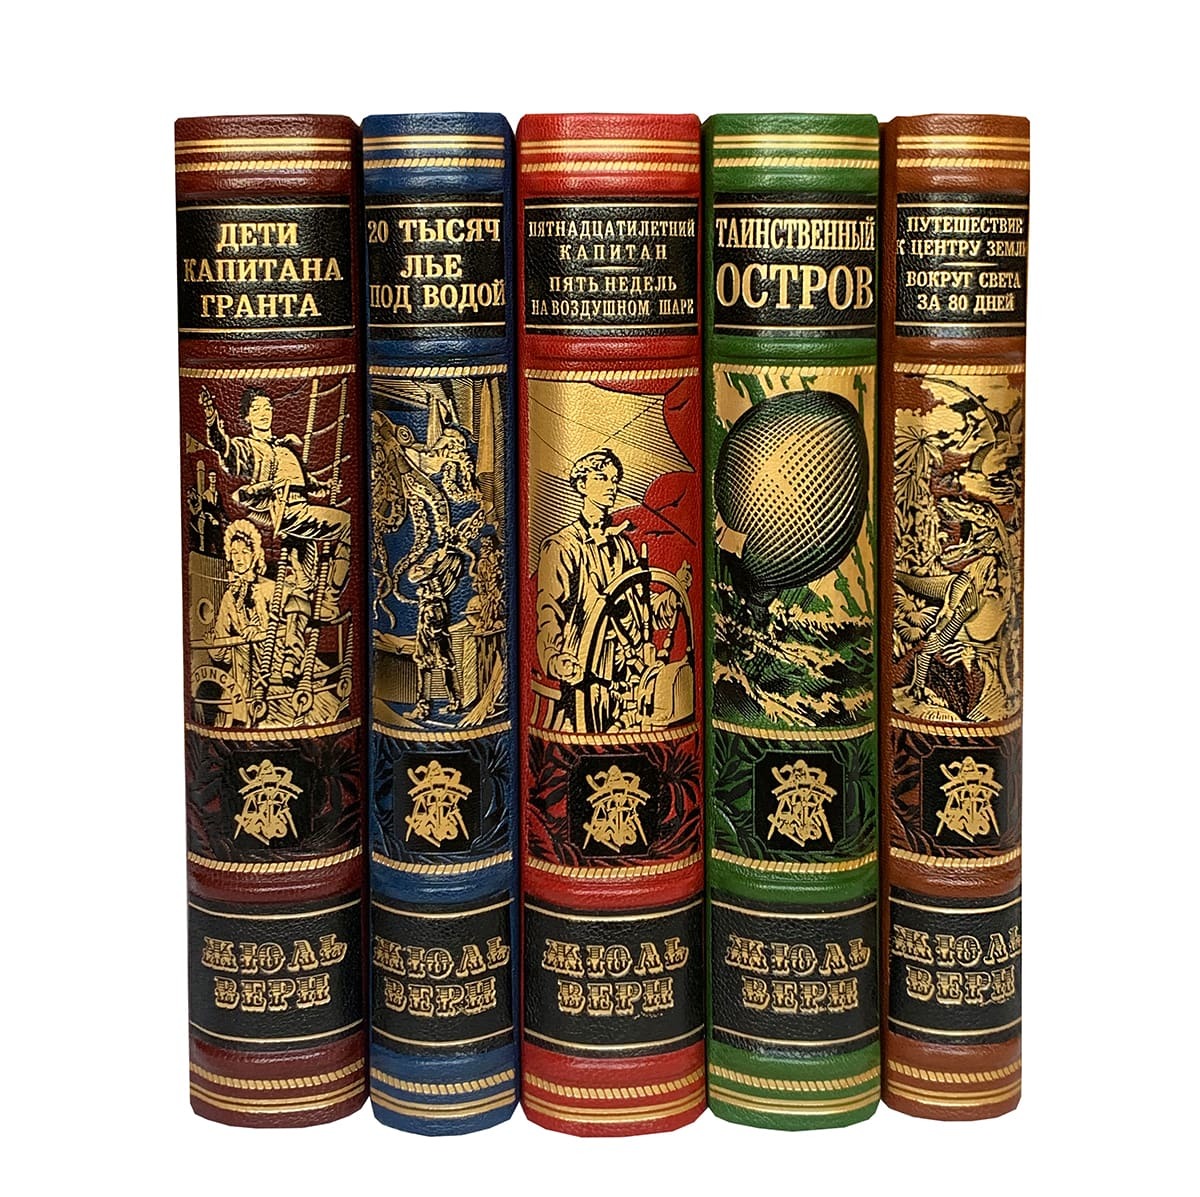 Верн Ж. Избранное в 5 томах